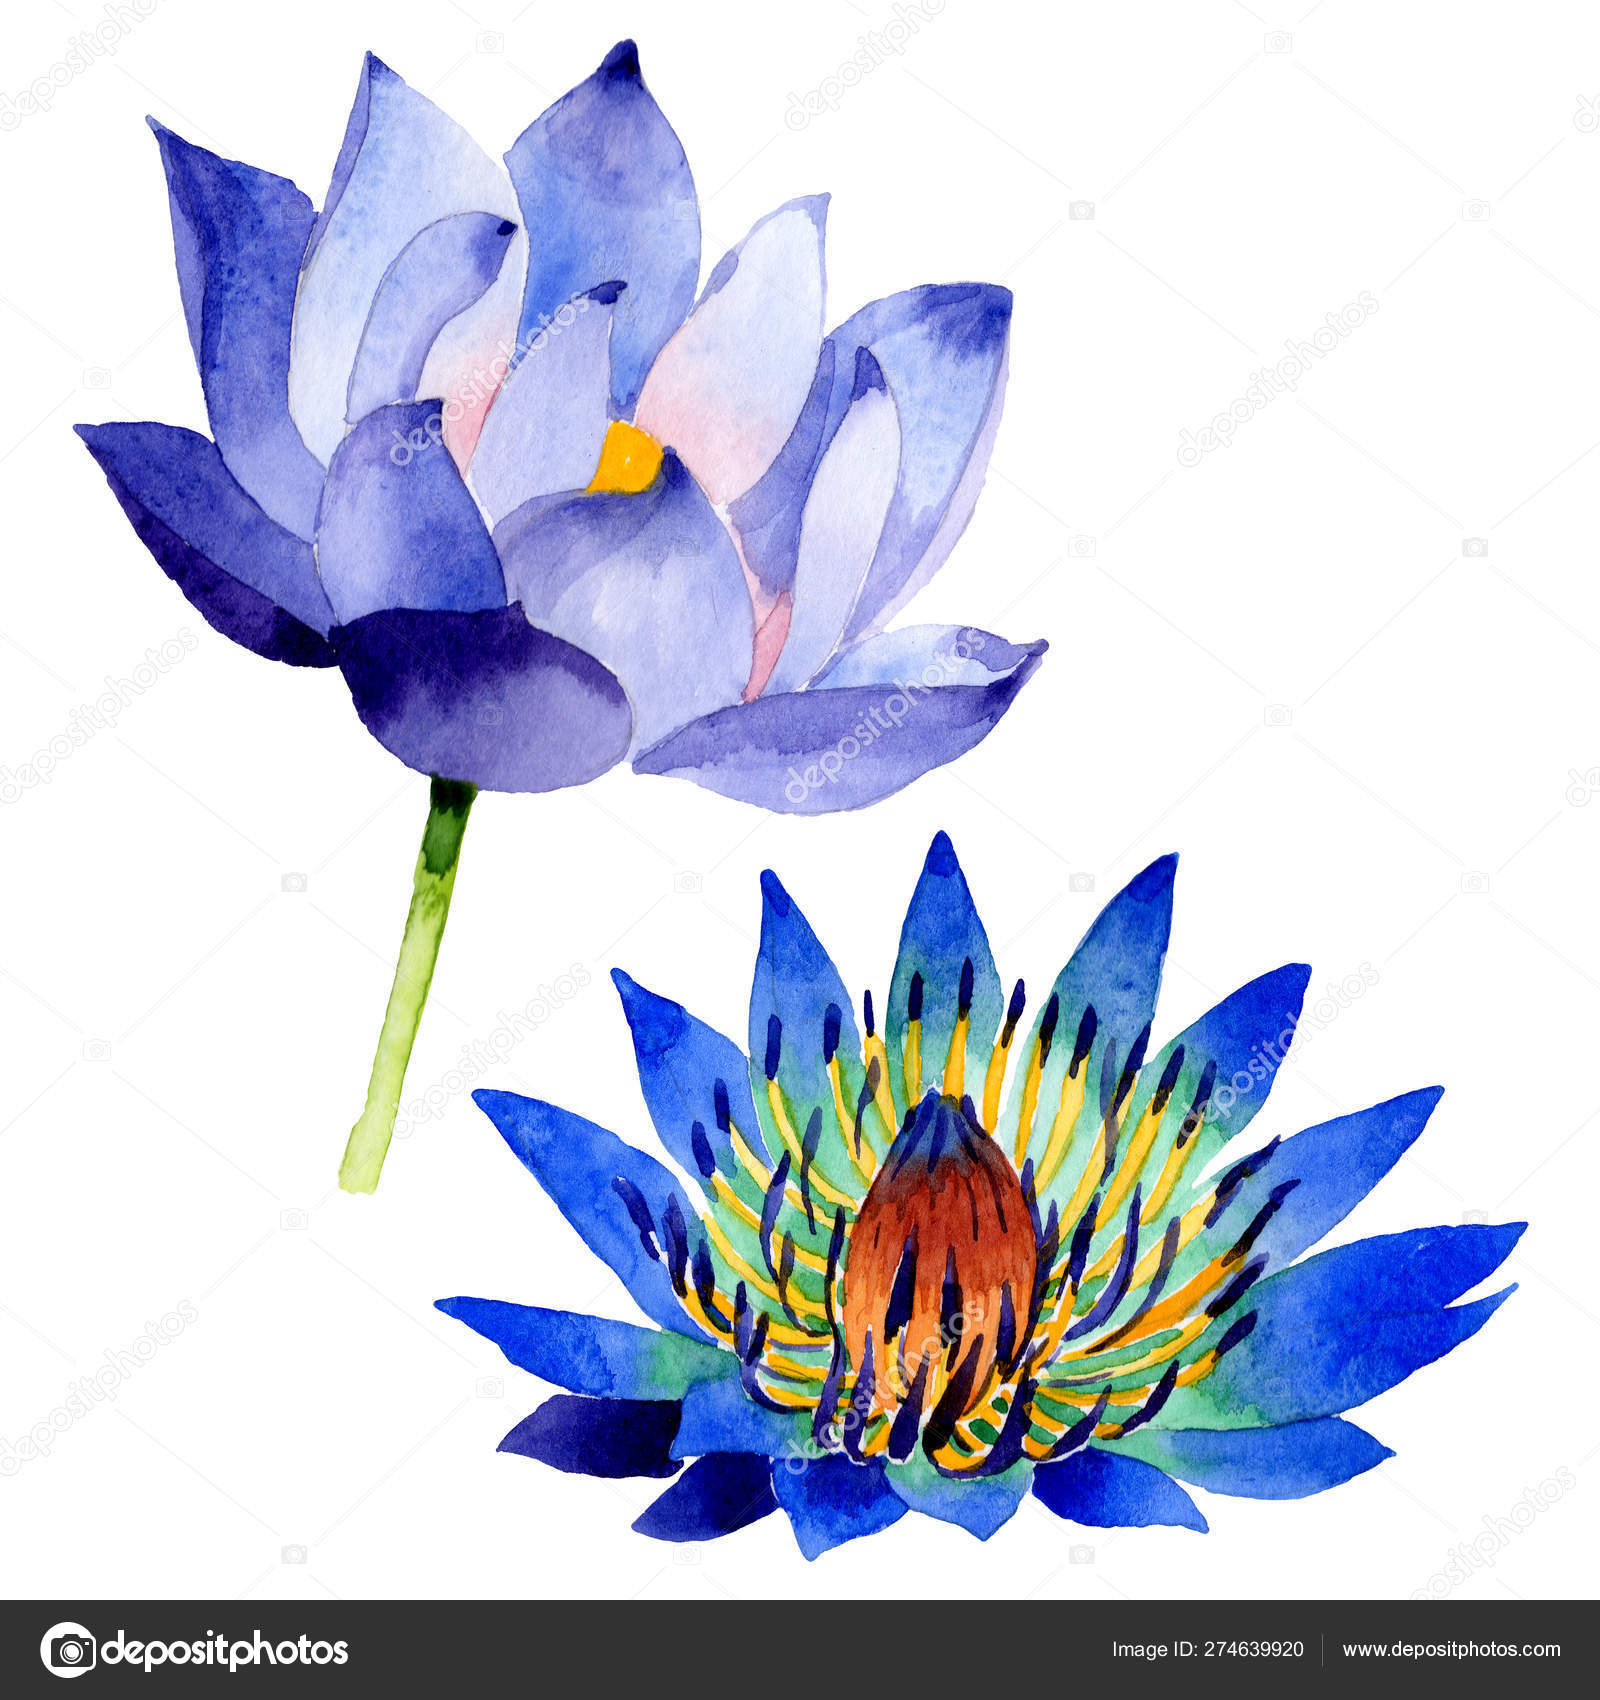 Blue lotus floral botanical flowers. Watercolor background illustration  set. Isolated nelumbo illustration element. Stock Photo by ©AndreYanush  274639920